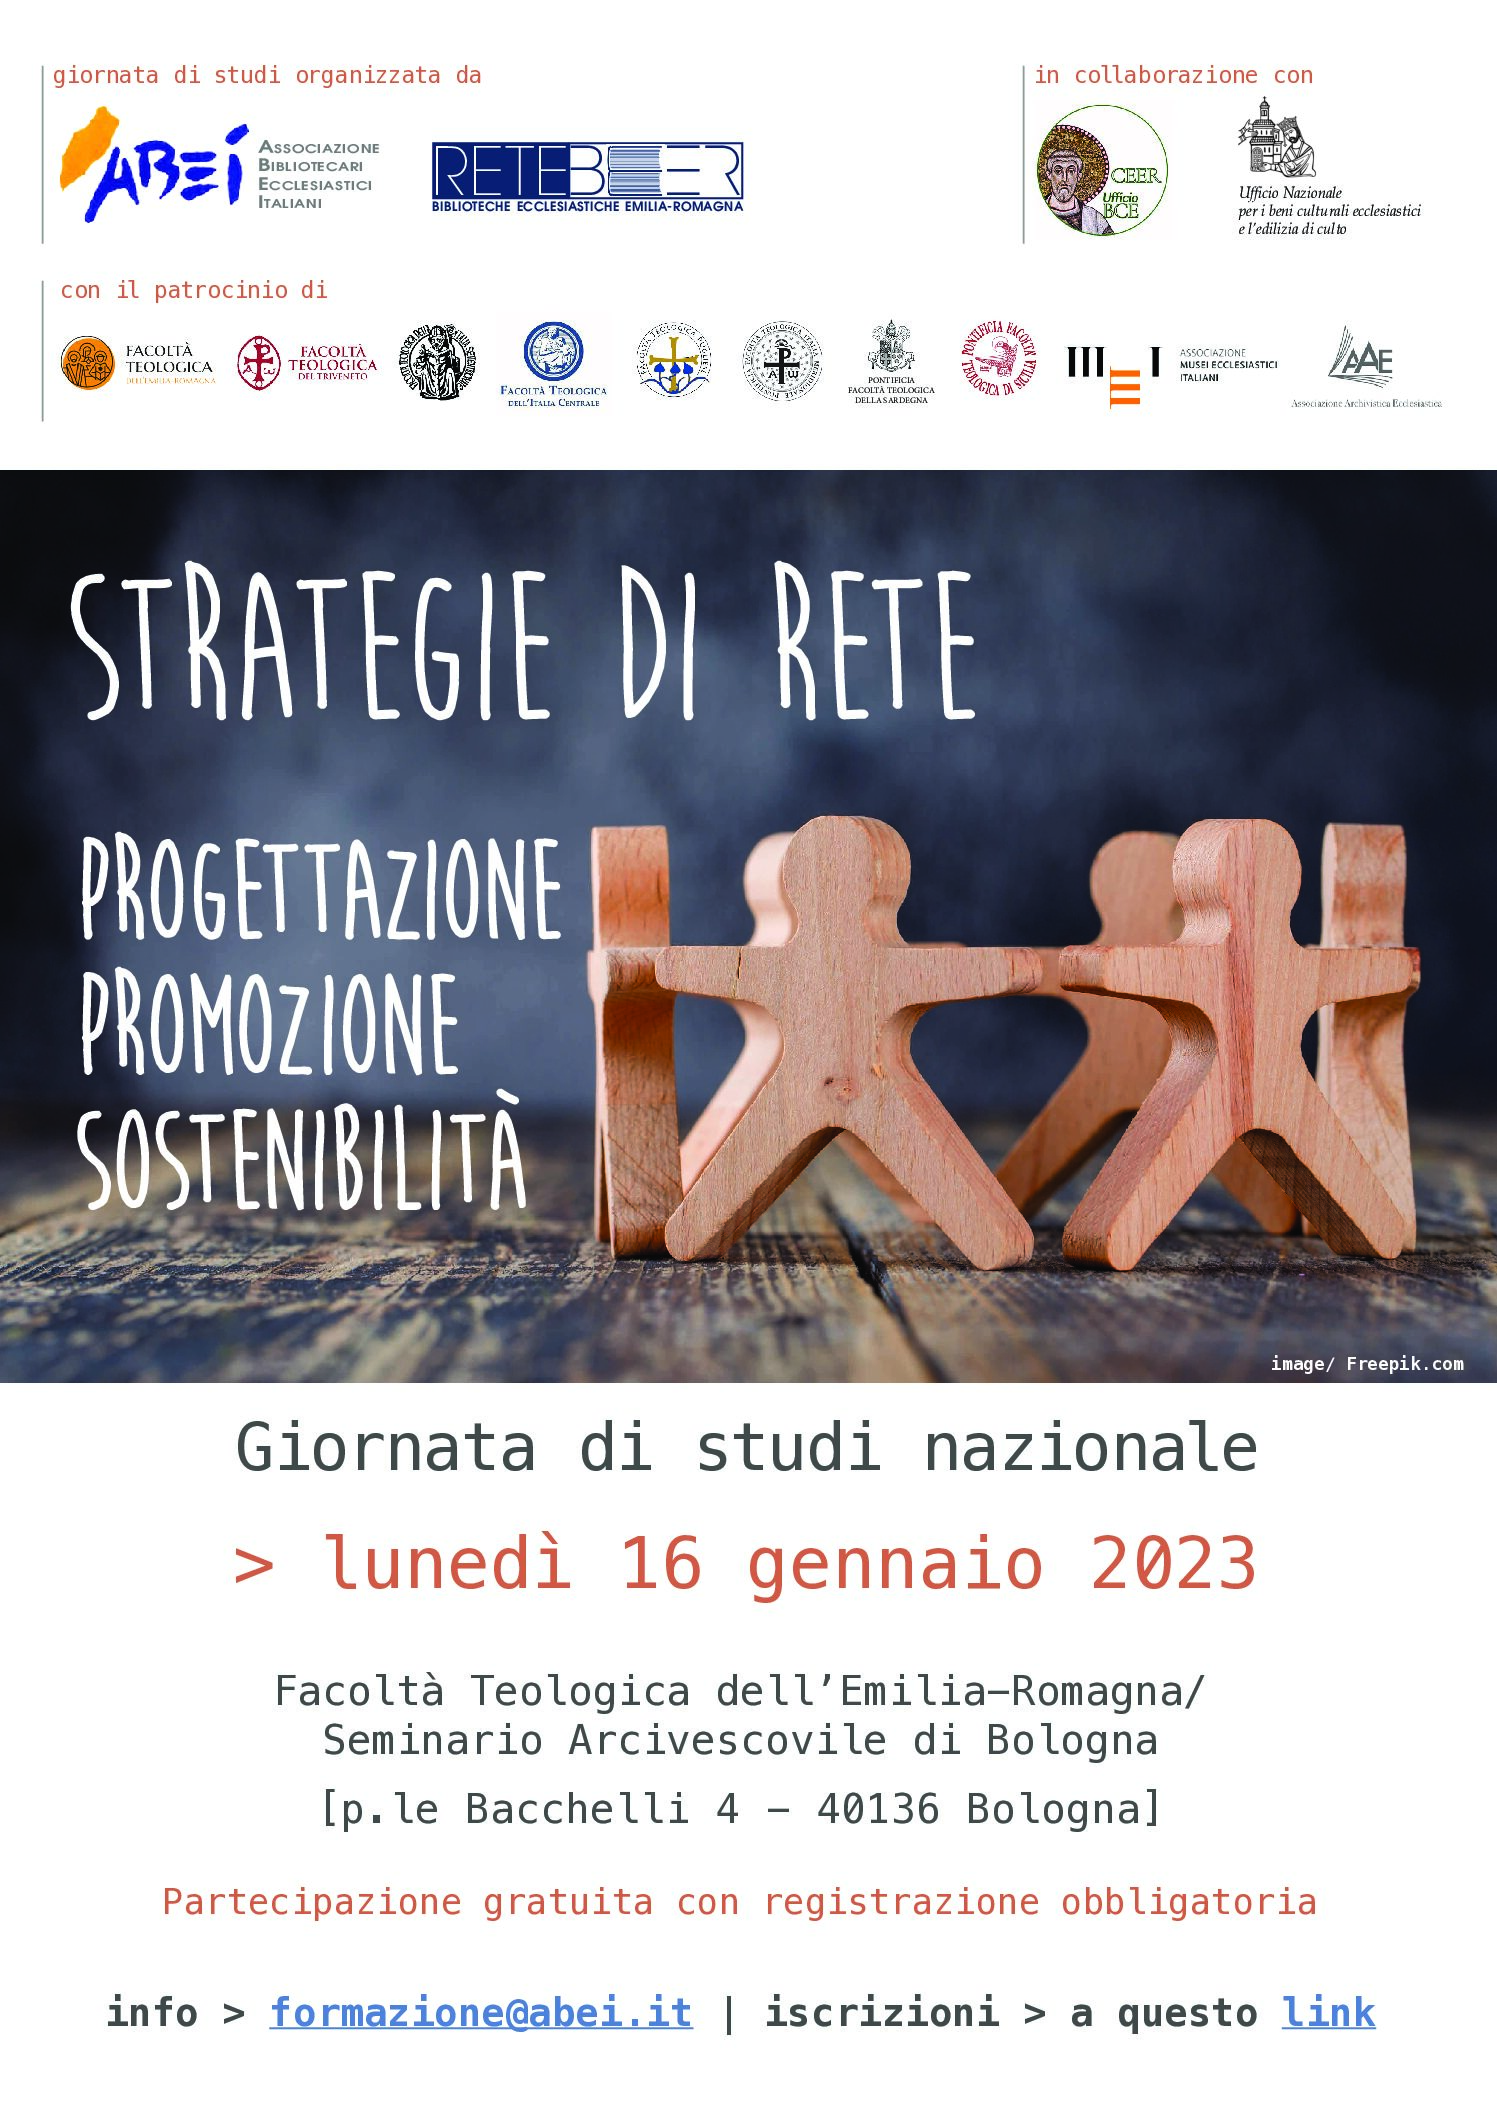 16/01/2023 Giornata di studi nazionale  STRATEGIE DI RETE Progettazione, promozione, sostenibilità